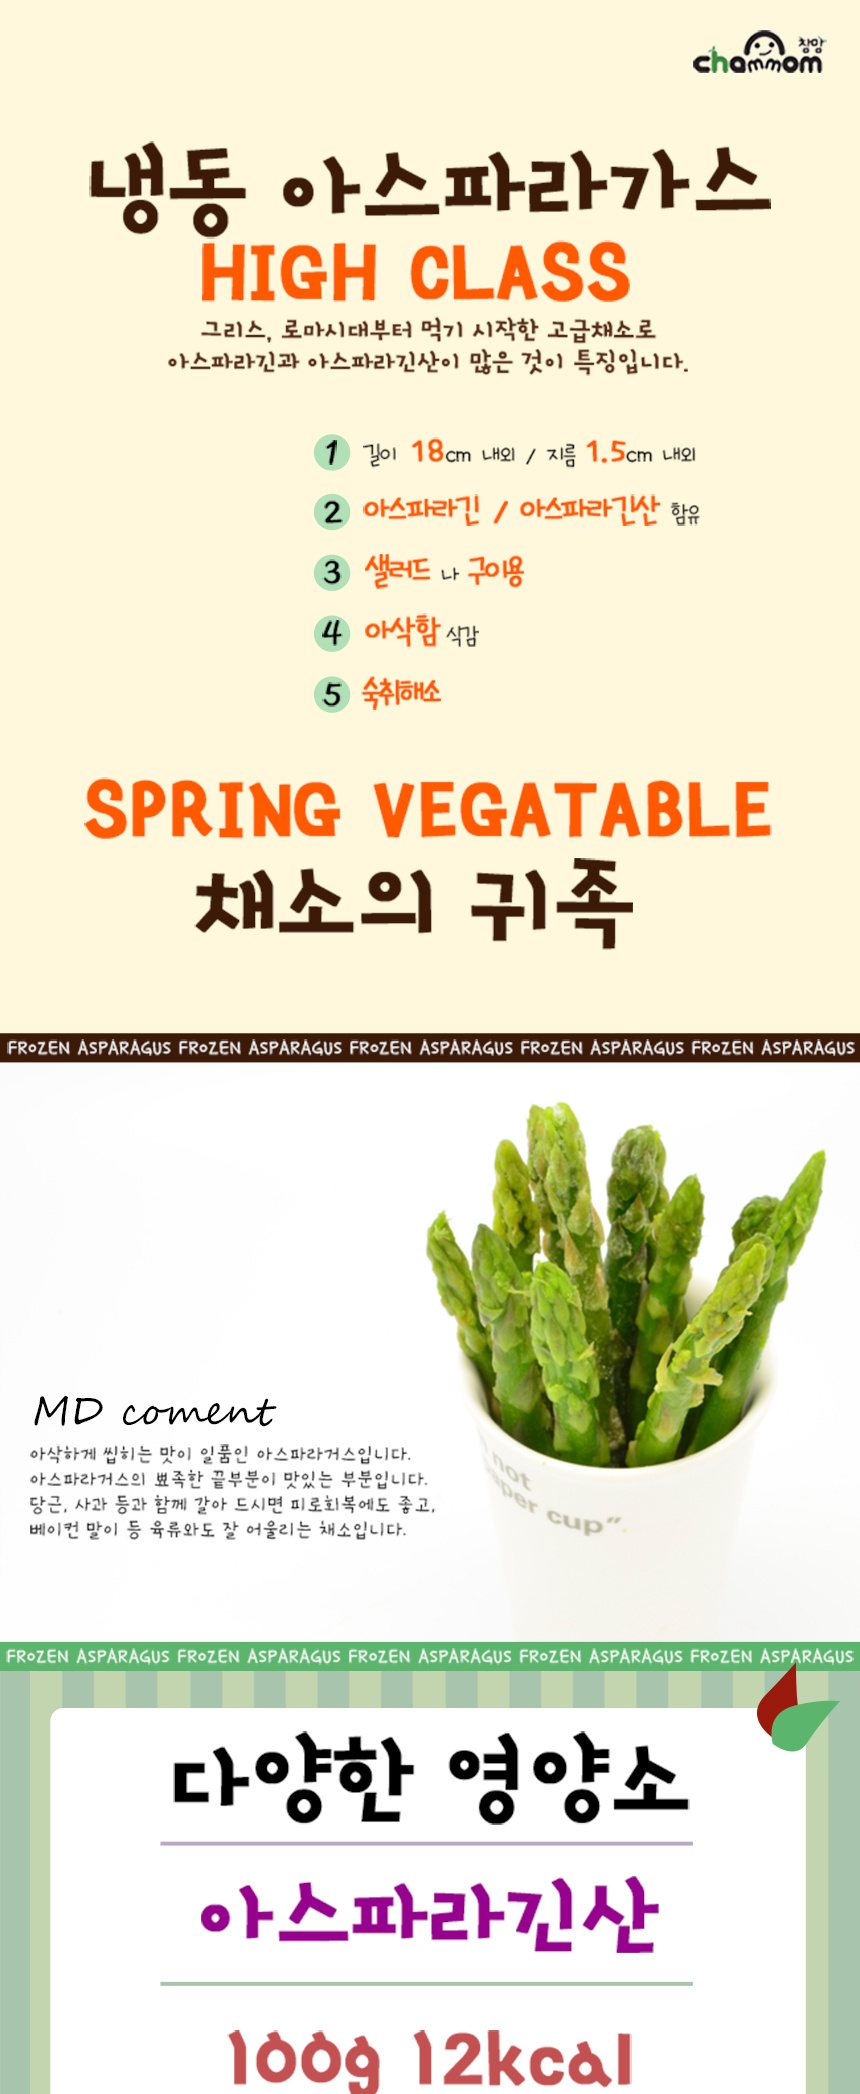 asparagus01_01.jpg